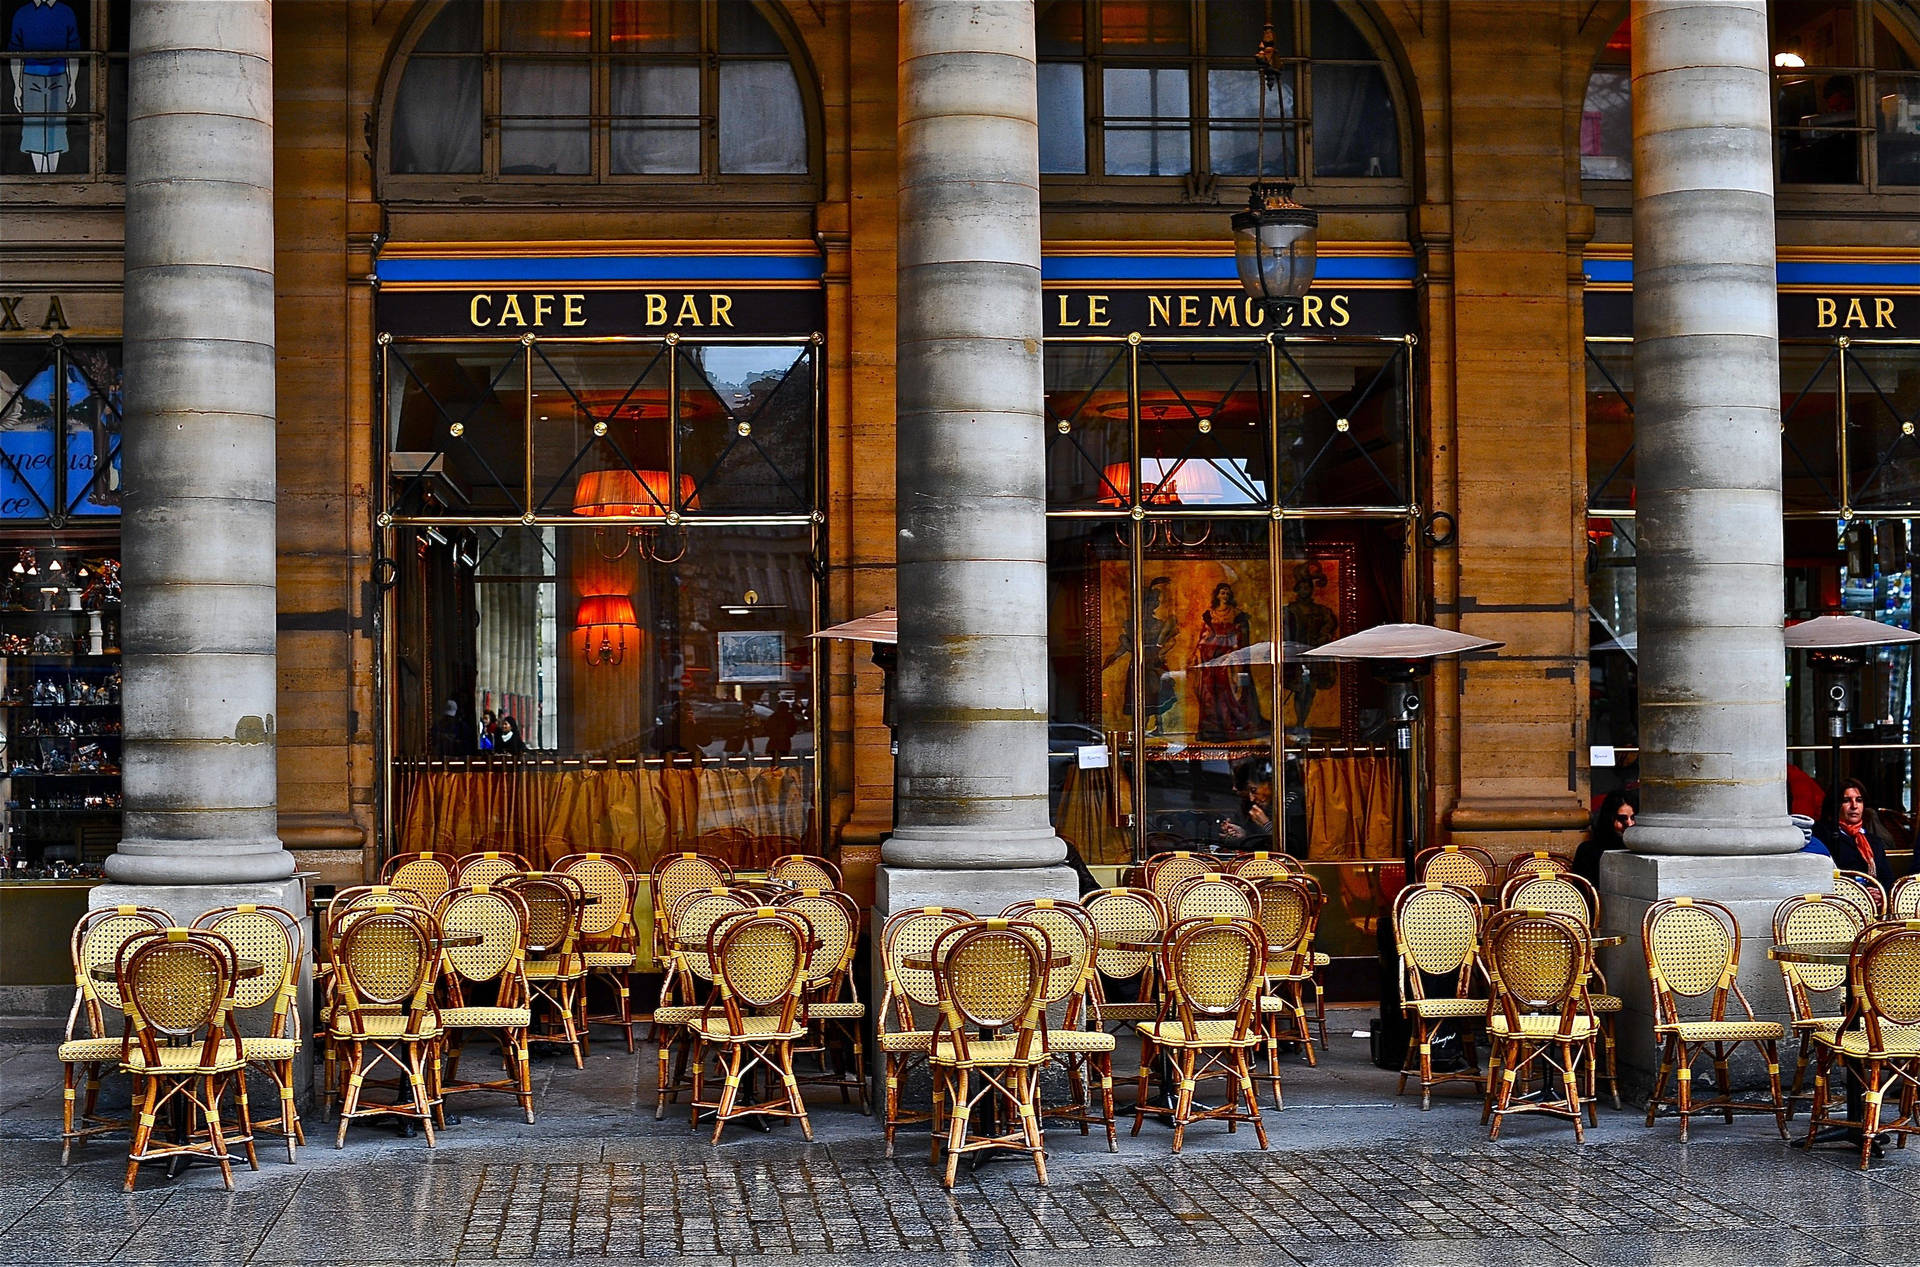 Le Nemours Cafe Bar In Paris Picture